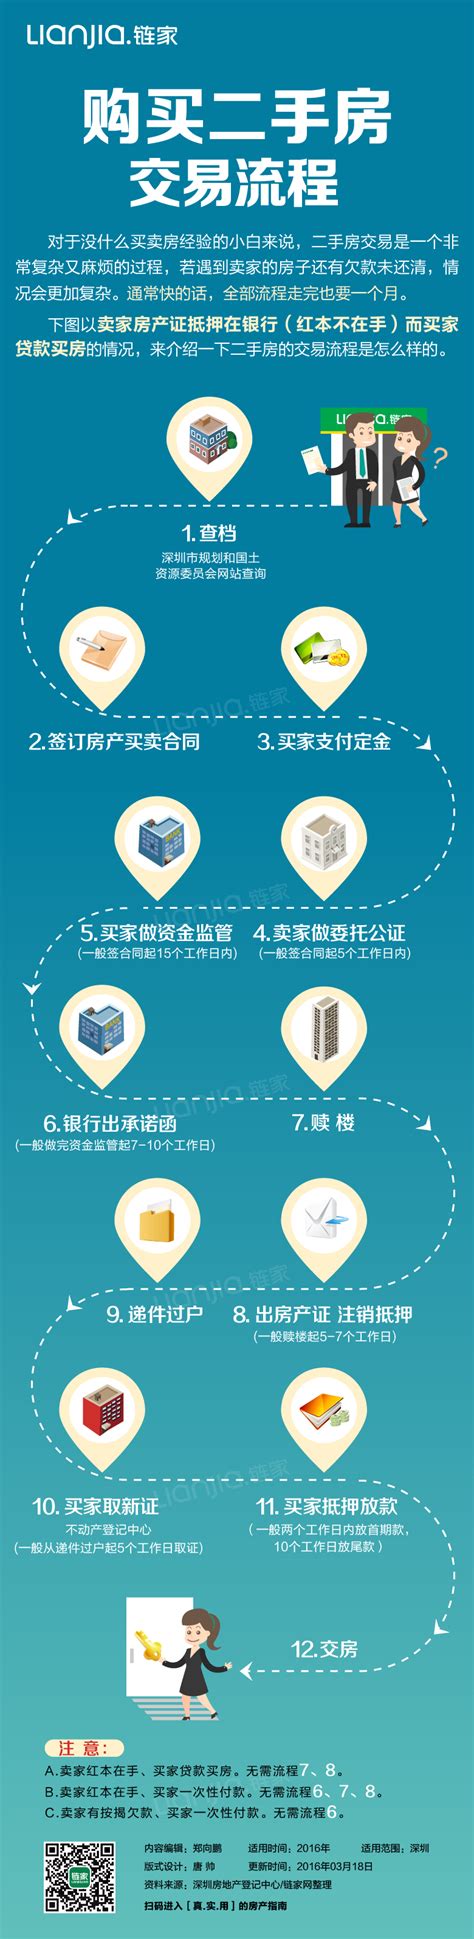 深圳二手房贷款流水政策